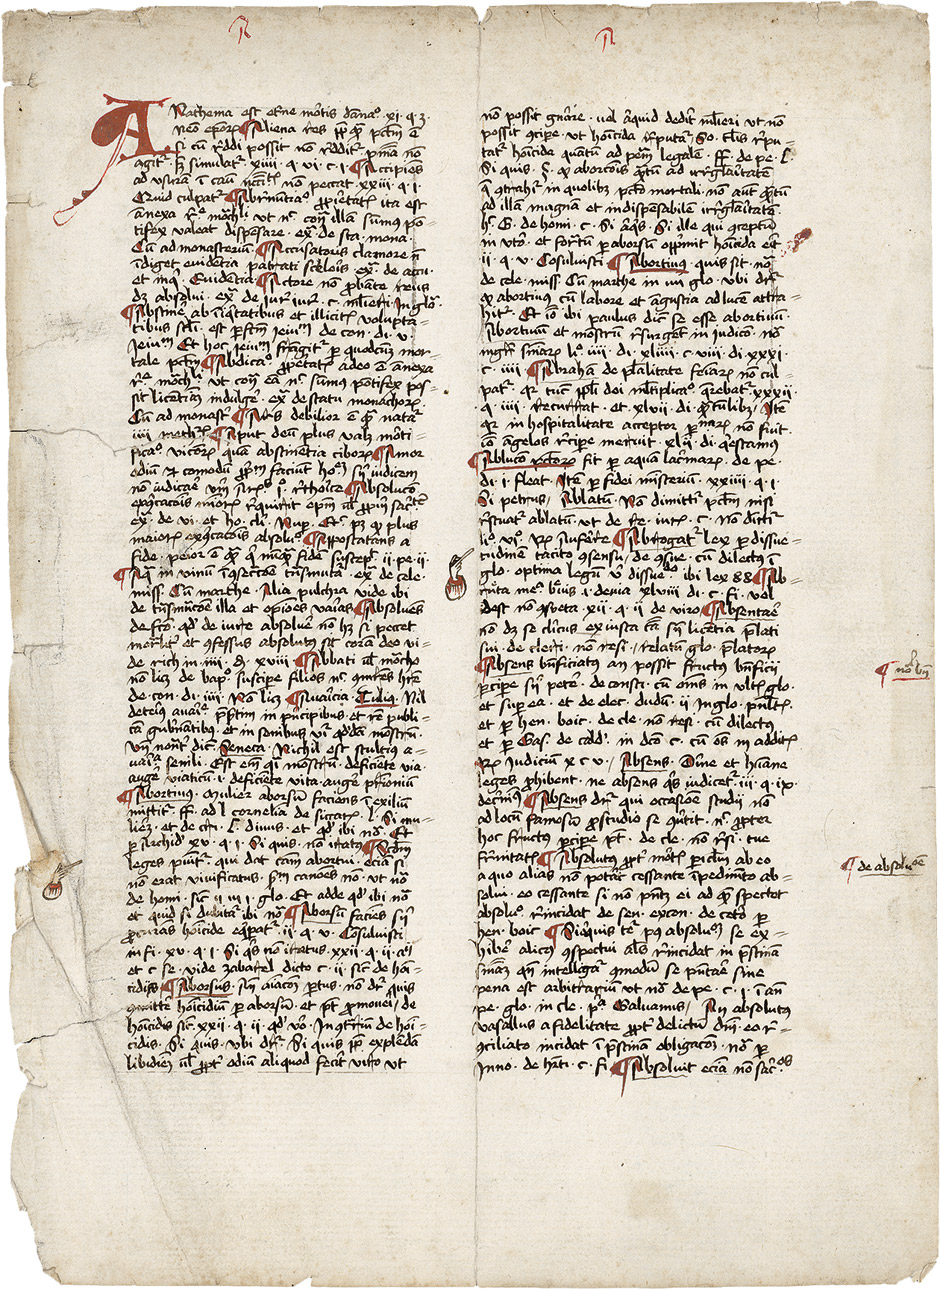 Lot 1001, Auction  115, Anathema est, Einzelblatt einer lateinischen Handschrift auf Papier. 